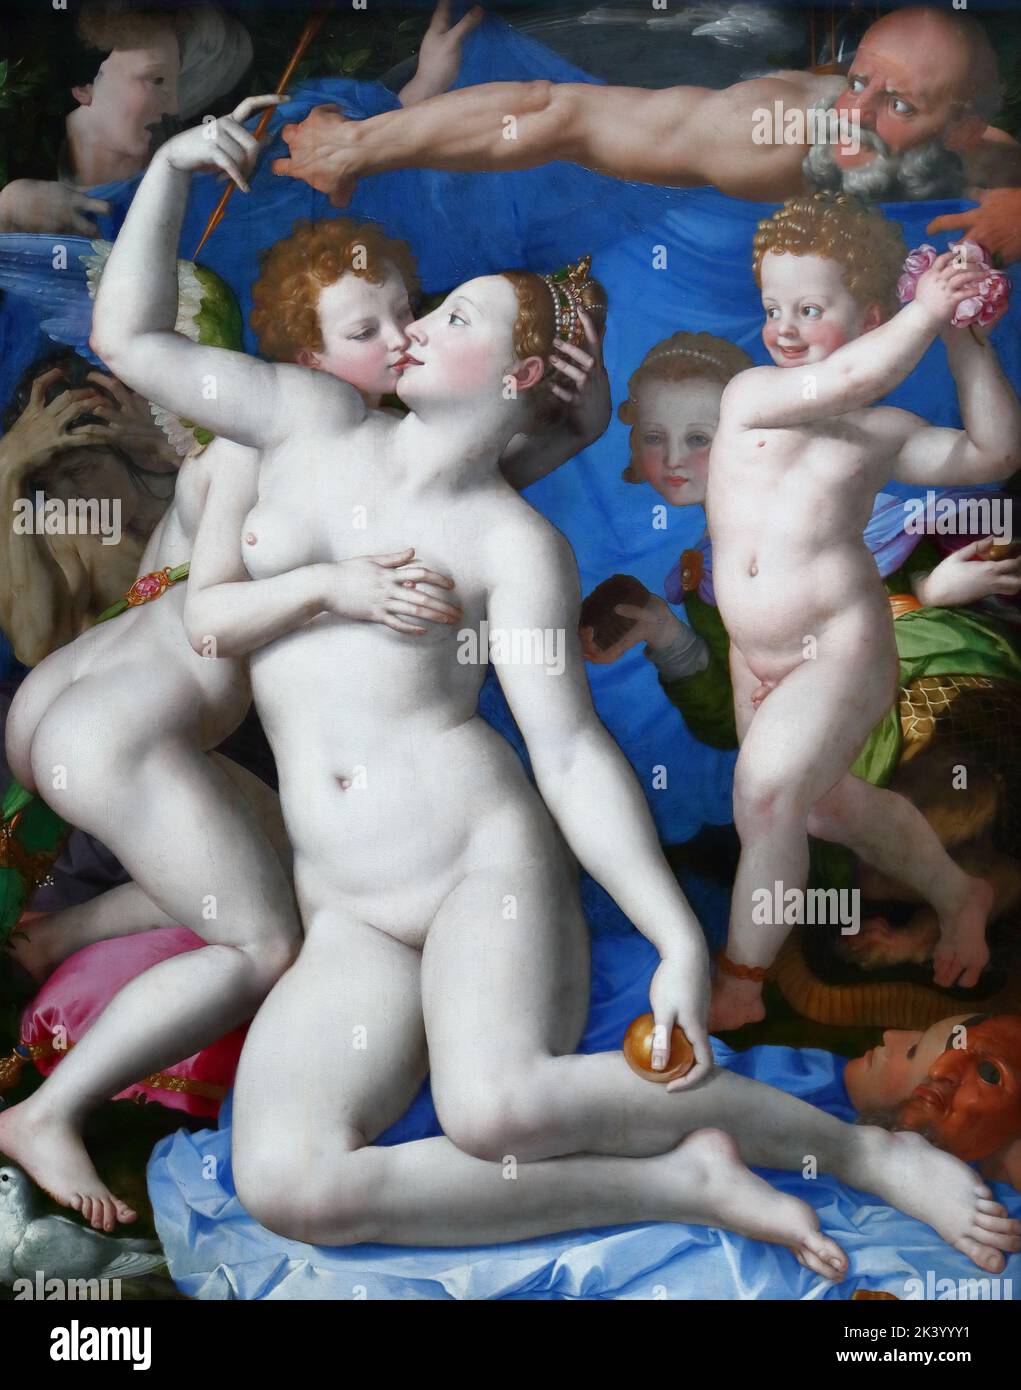 Eine Allegorie mit Venus und Amor des italienischen Manieristen Agnolo Bronzino in der National Gallery, London, Großbritannien Stockfoto